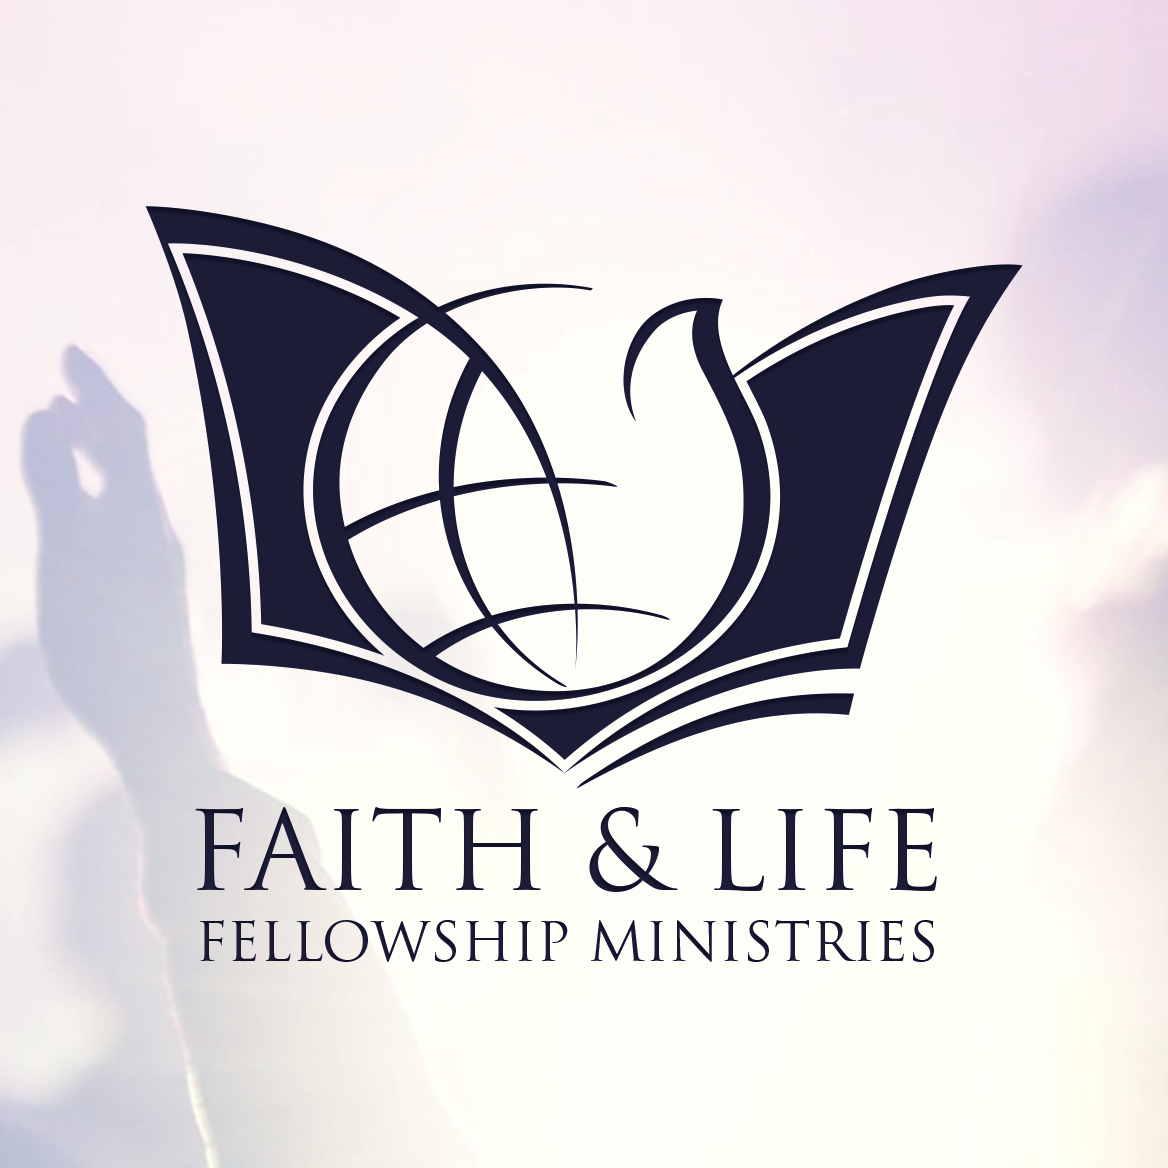 Faith & Life Fellowship Ministries